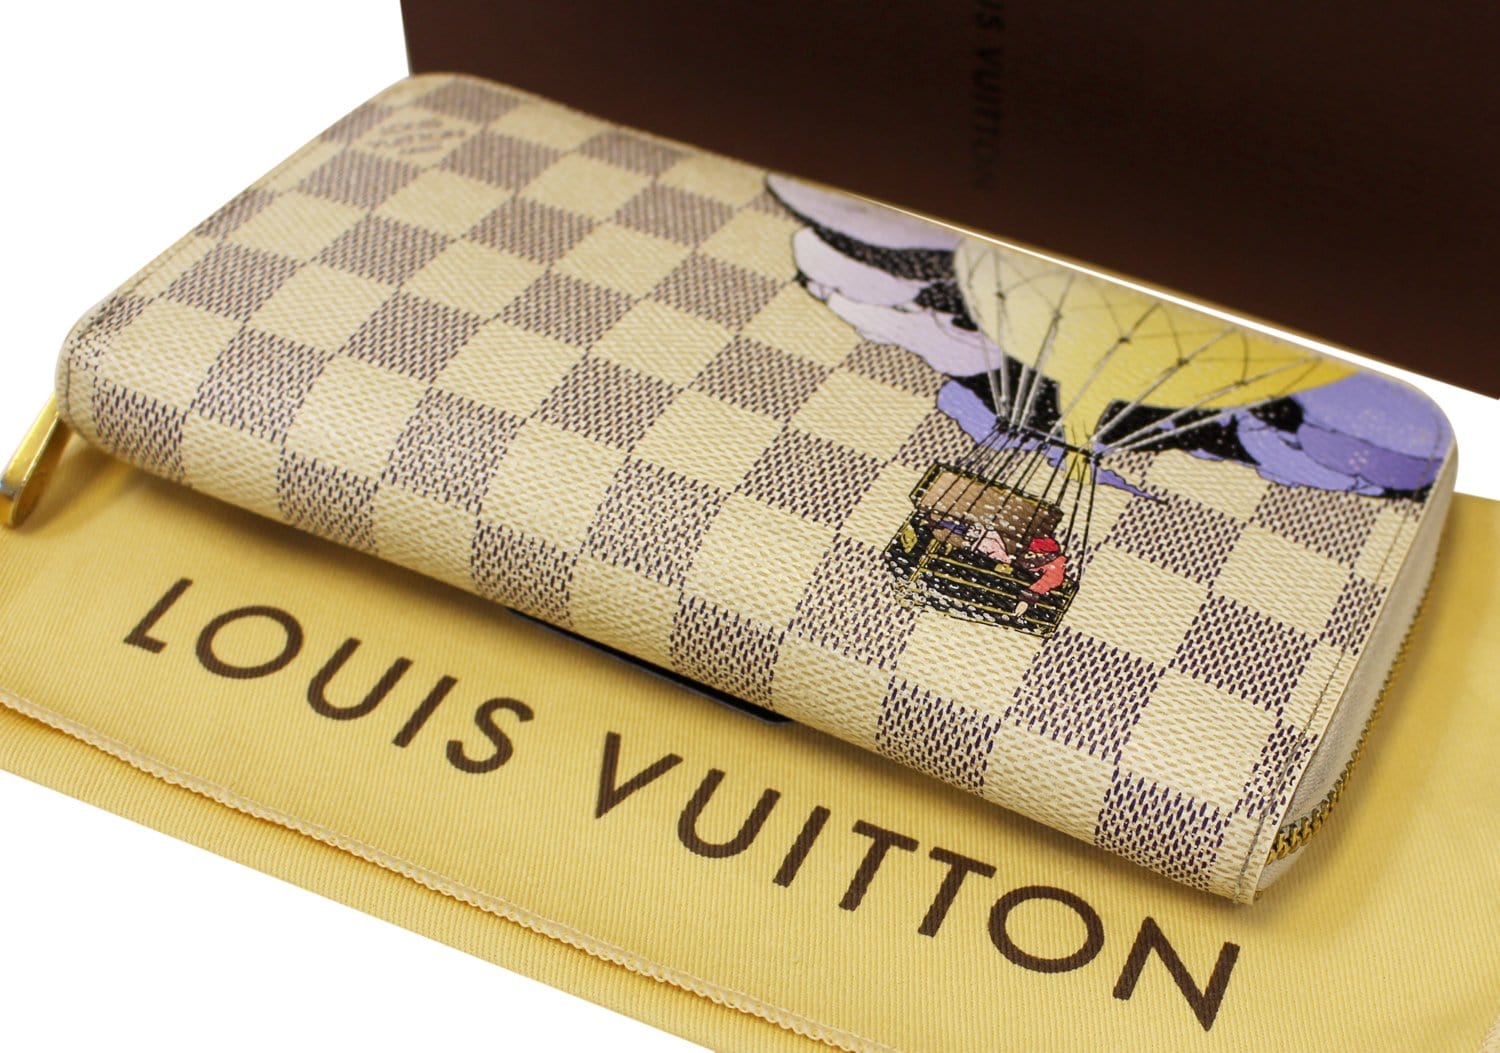 Louis Vuitton Limited Edition Monogram Canvas Illustre Zippy